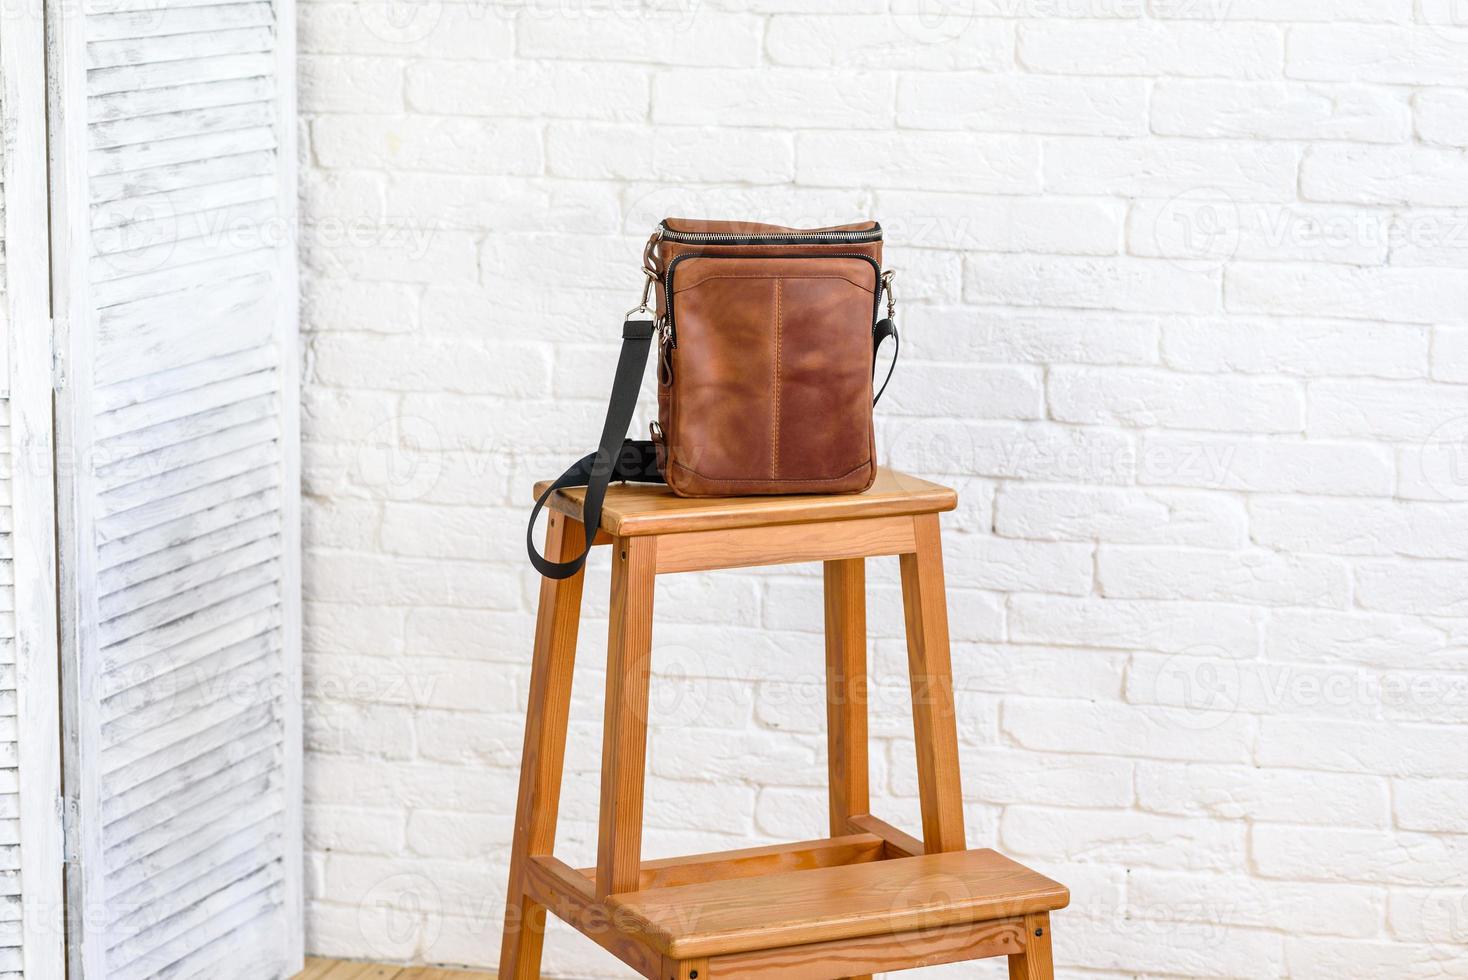 hermoso bolso marrón de cuero diseñado para varios artículos foto